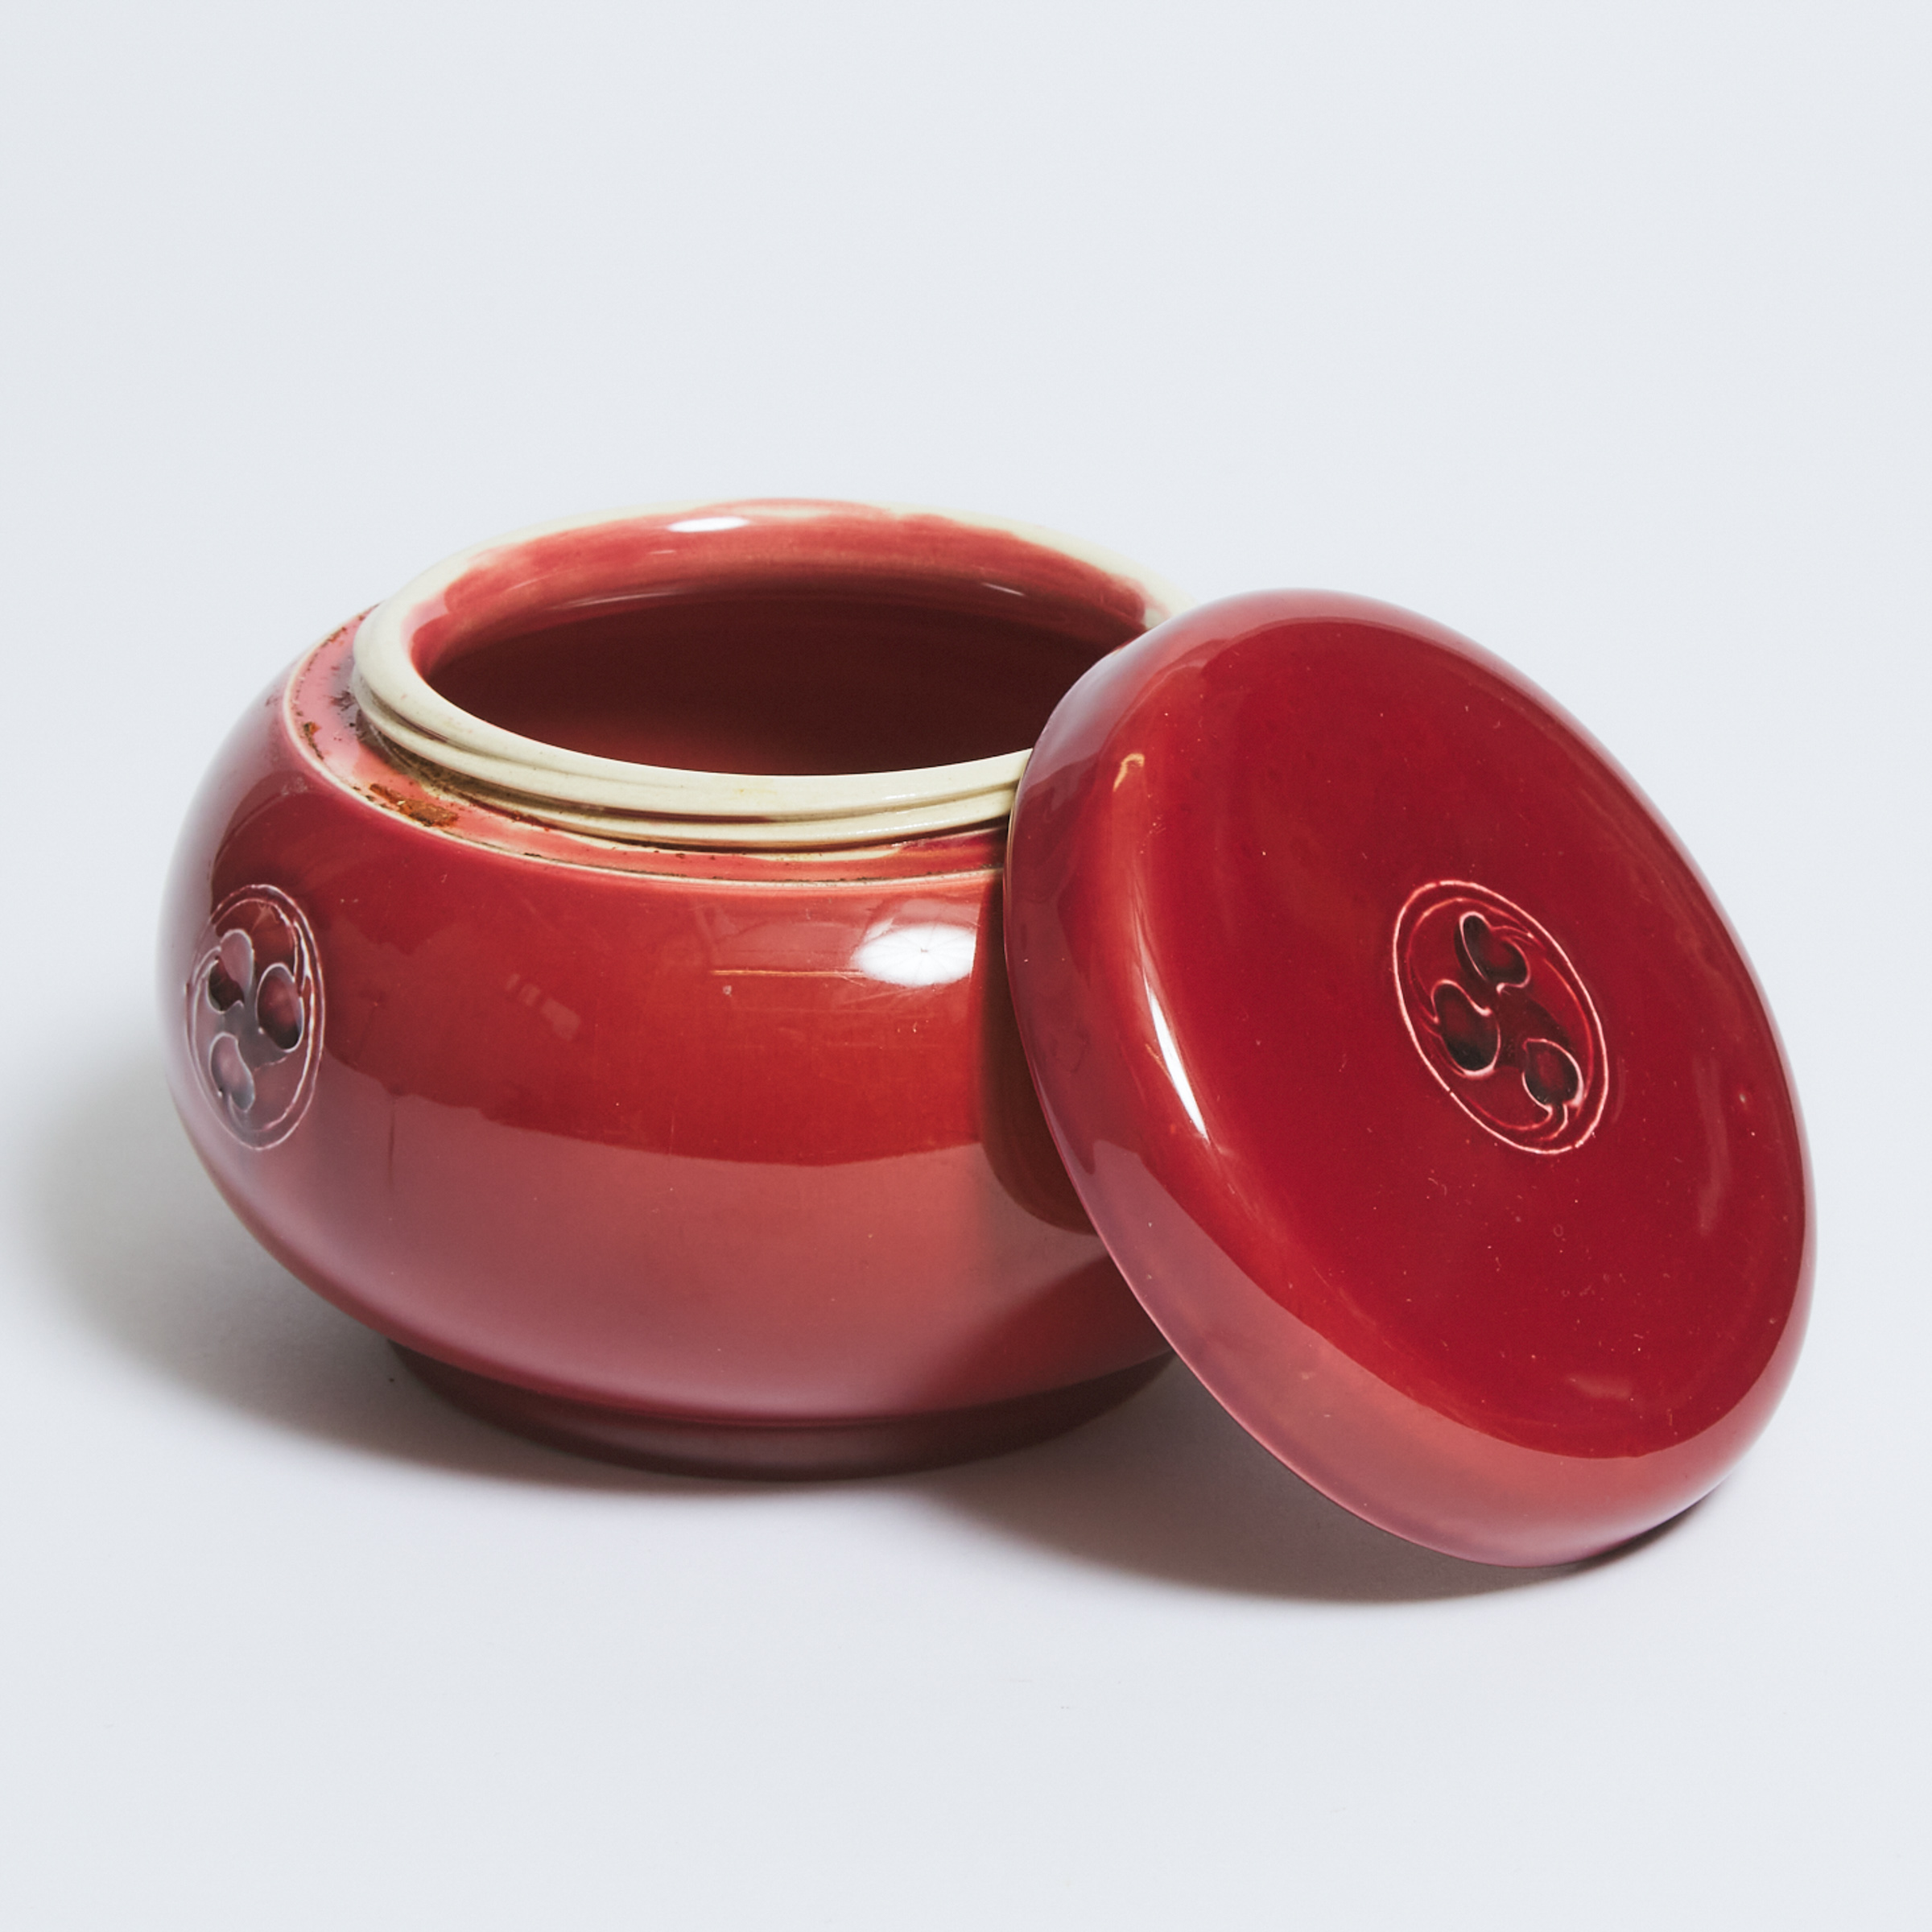 Macintyre Moorcroft Red Flamminian Tobacco Jar, c.1906-13